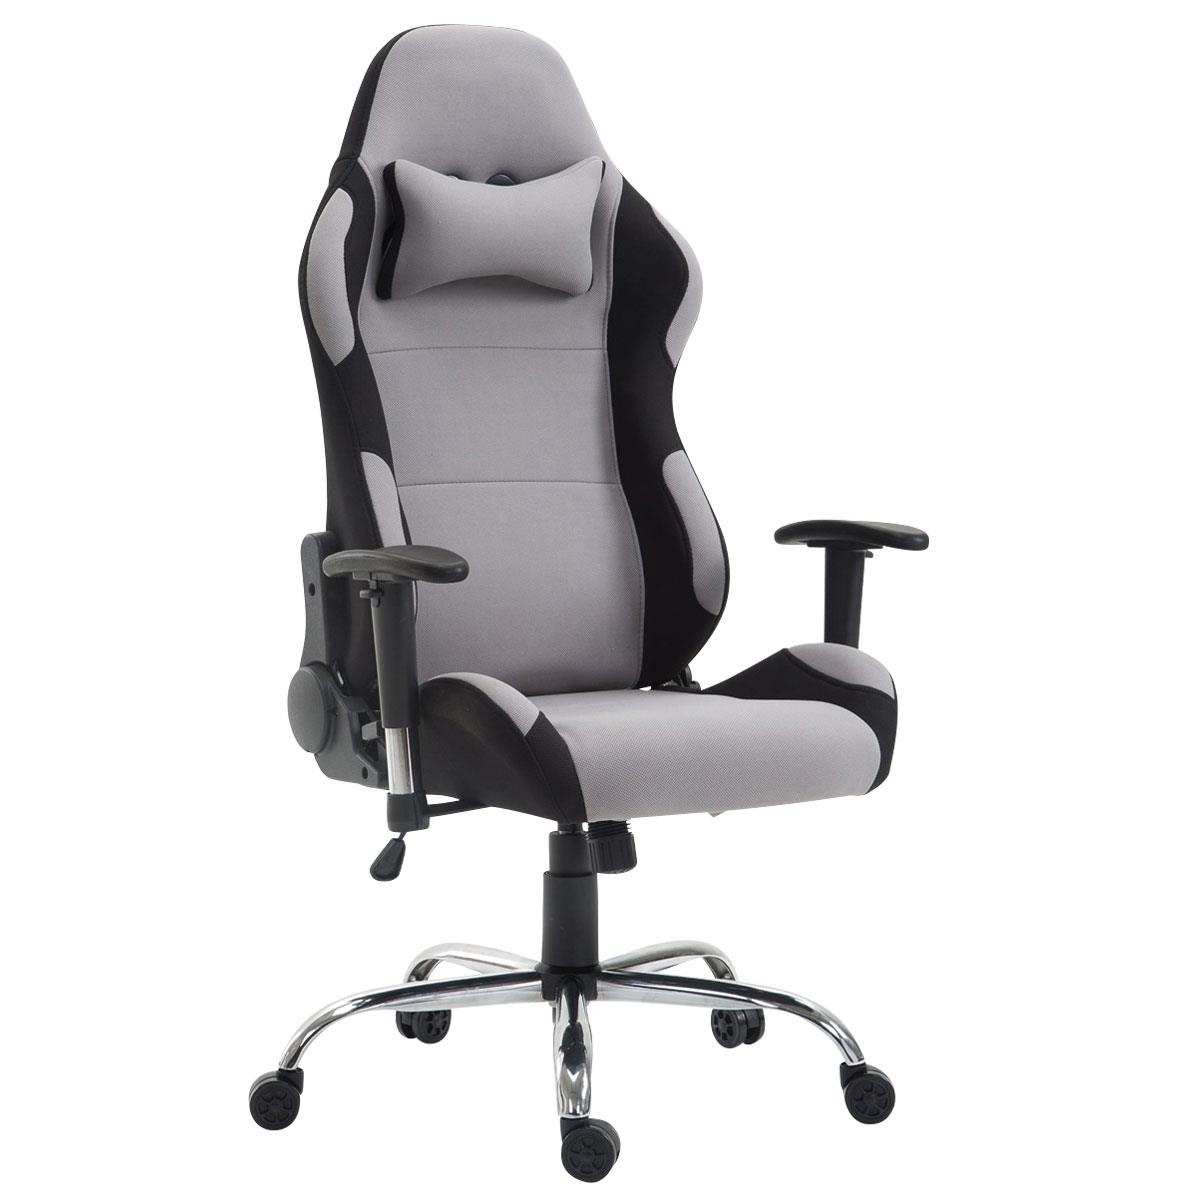 Gaming-Stuhl ROSBY STOFF. Sportliches Design und hoher Komfort, Farbe Grau